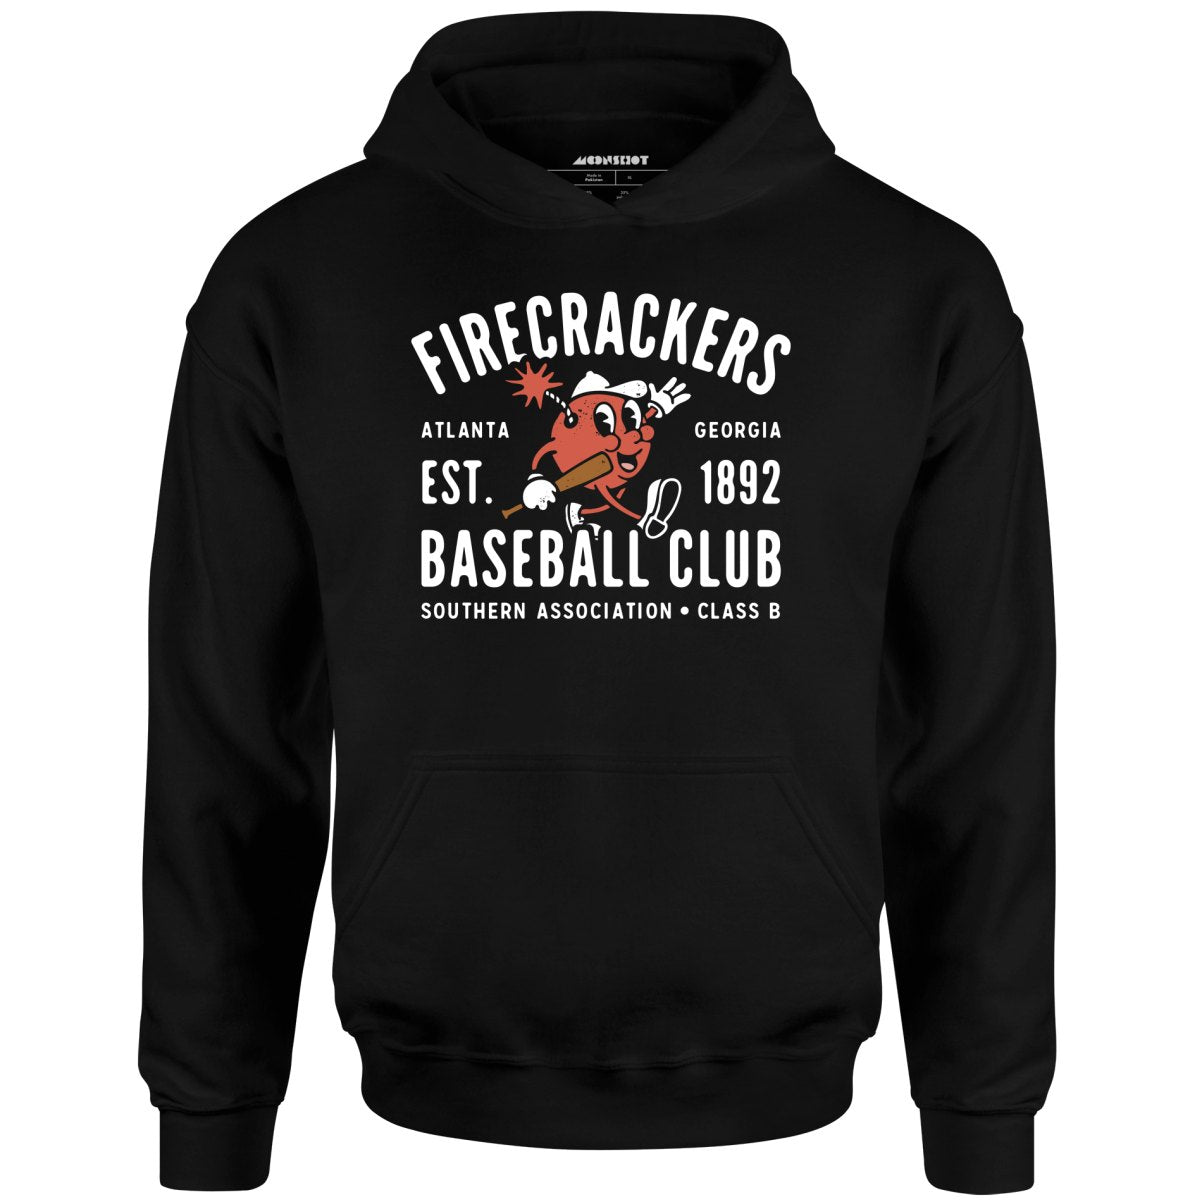 Atlanta Firecrackers - Georgia - Vintage Defunct Baseball Teams - Unisex Hoodie